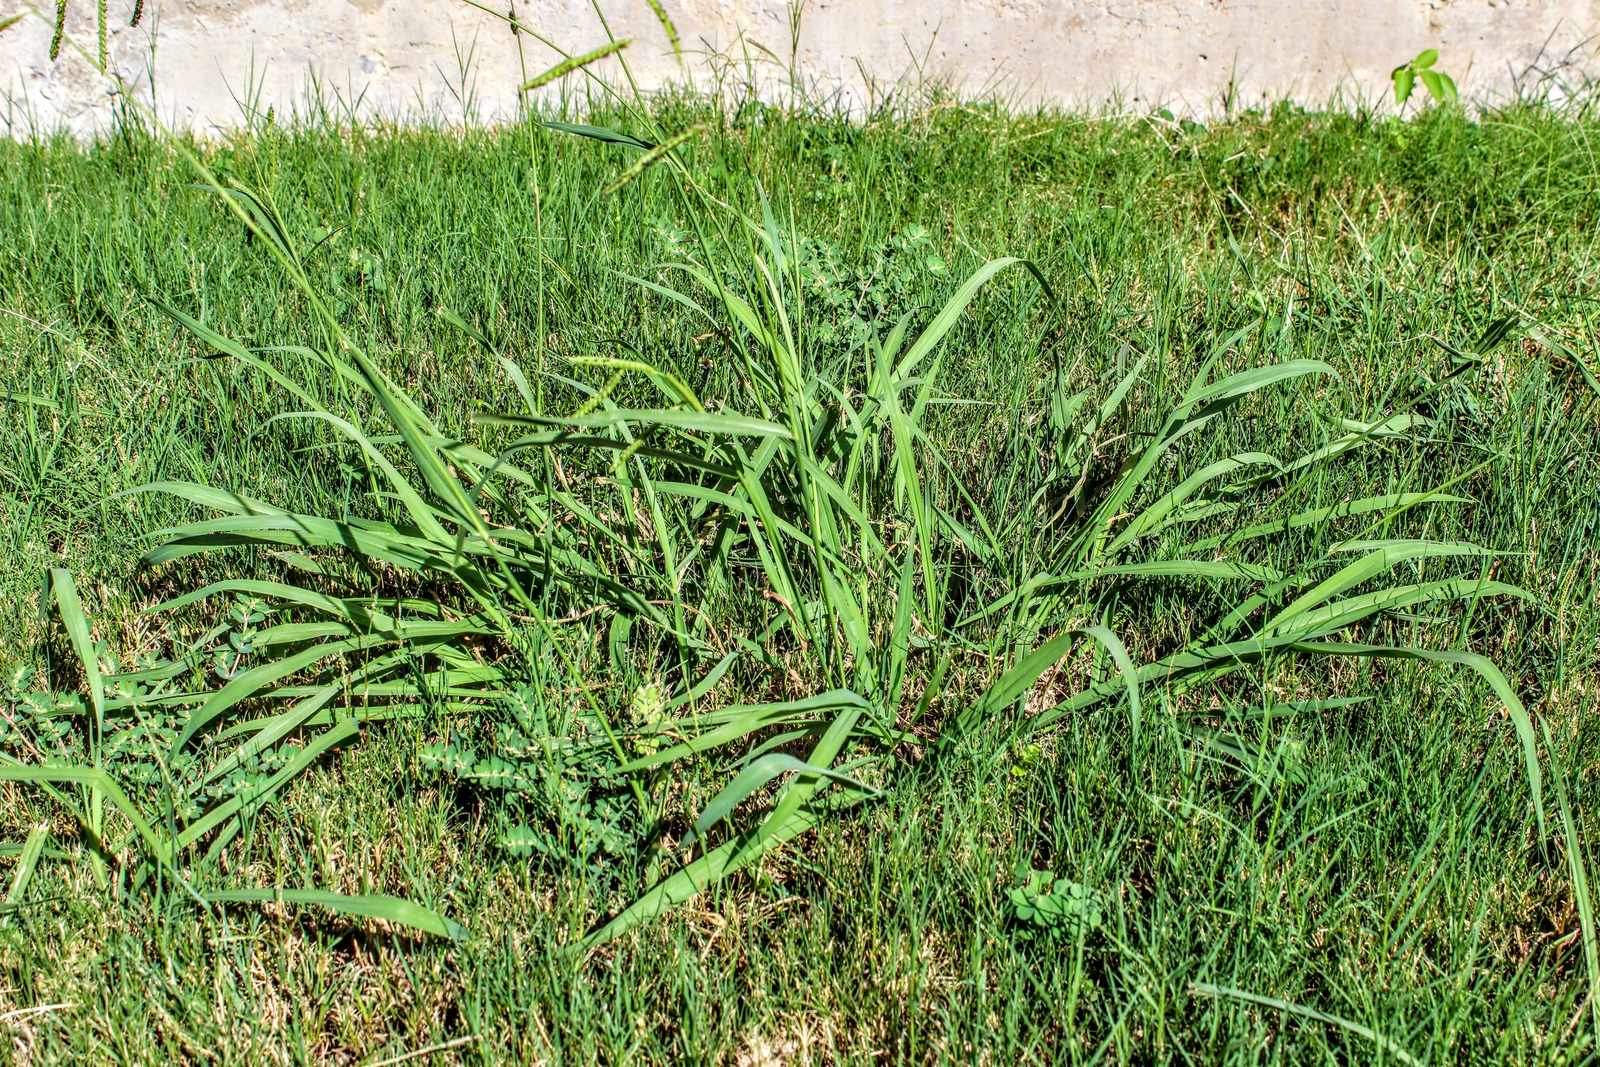 Lawn taken over by Crabgrass (Panicum virgatum) Weeds.